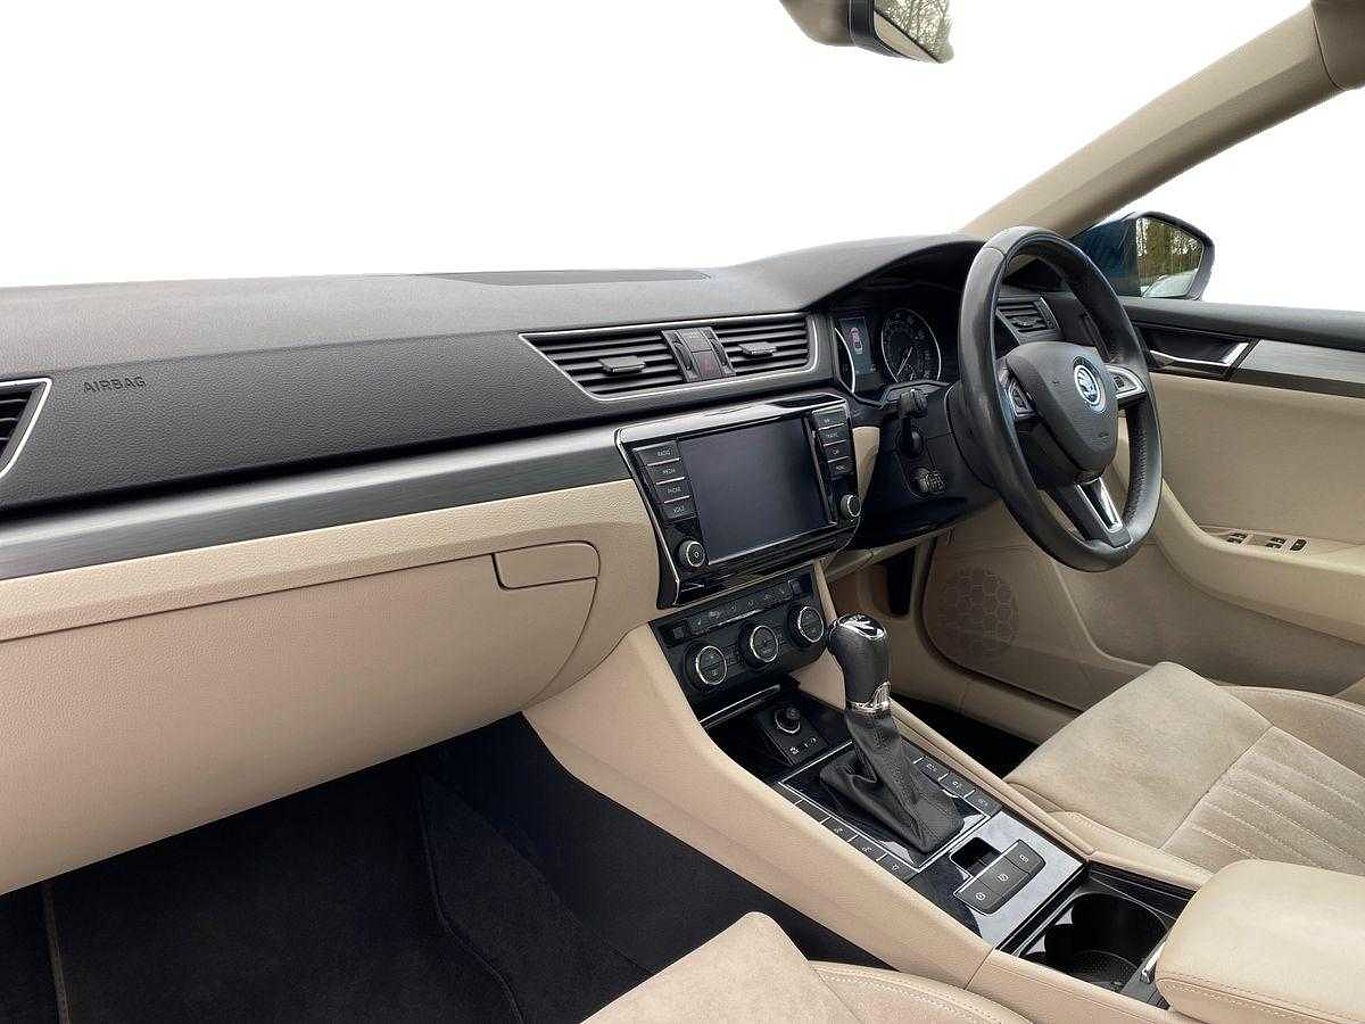 SKODA Superb 2.0 TSI 220ps SE L Executive DSG Hatchback